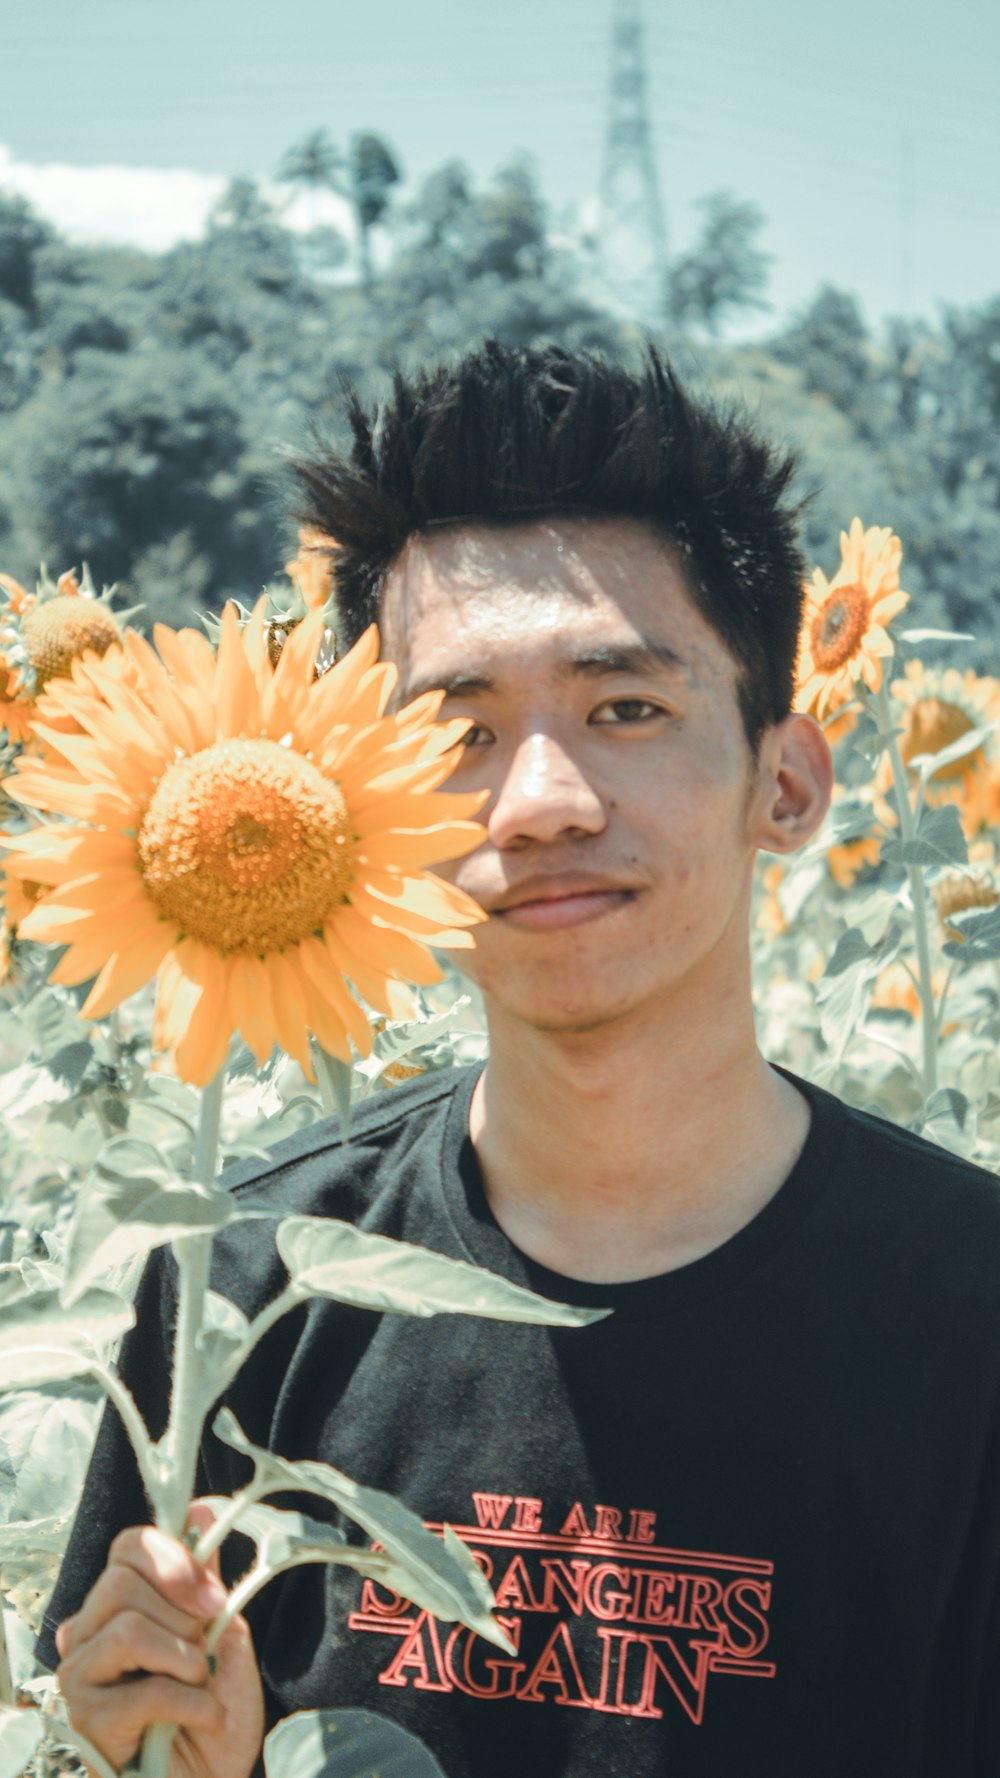 man standing near sunflower field